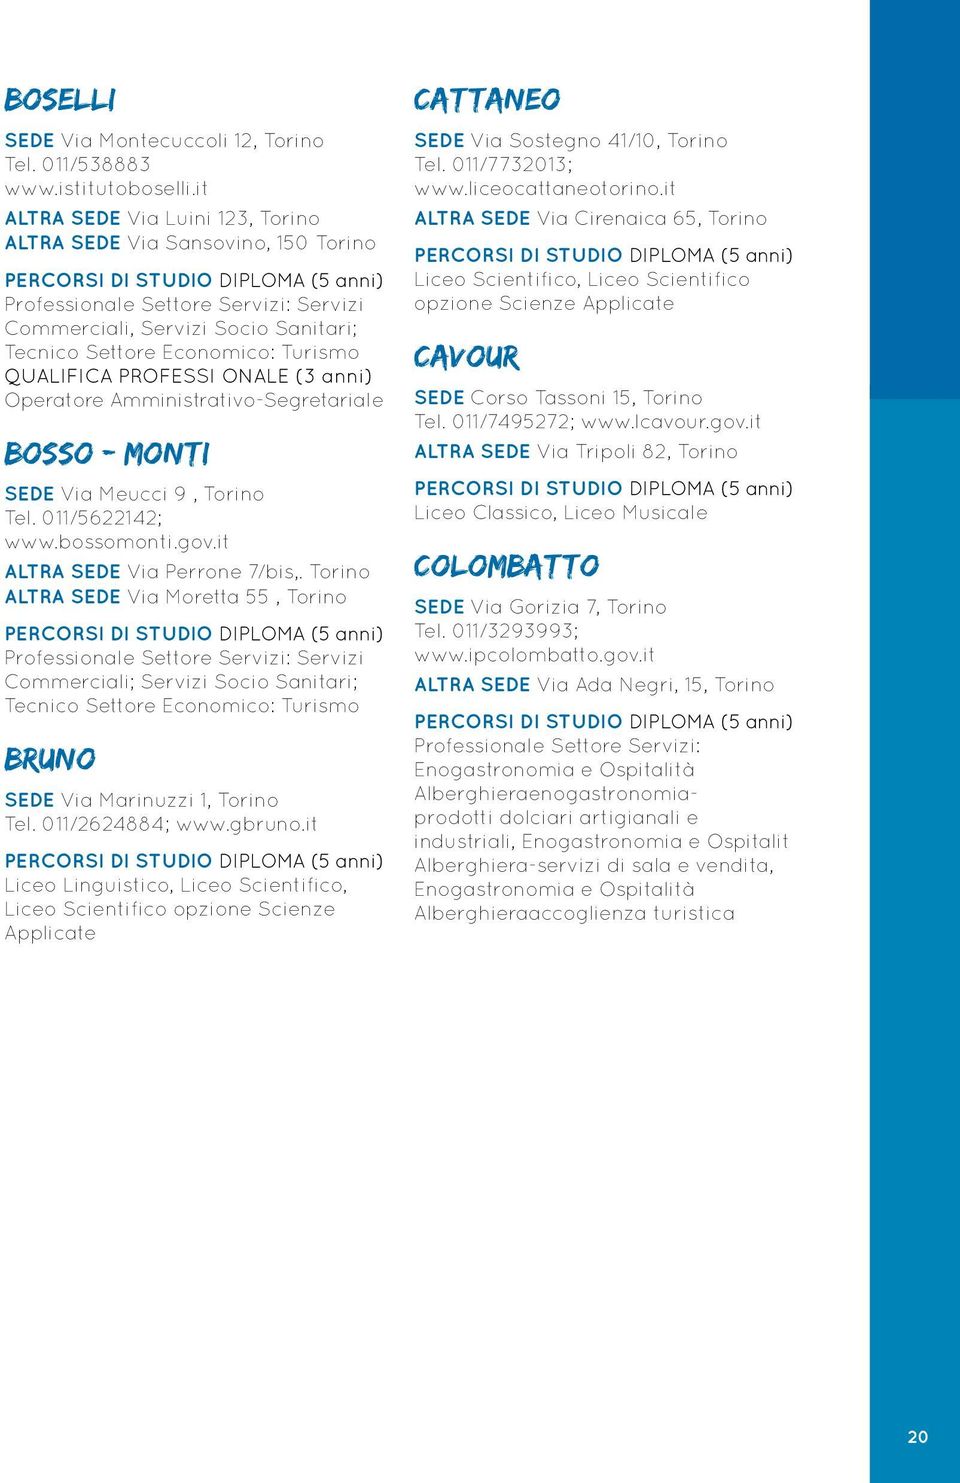 PROFESSI ONALE (3 anni) Operatore Amministrativo-Segretariale BOSSO - MONTI SEDE Via Meucci 9, Torino Tel. 011/5622142; www.bossomonti.gov.it ALTRA SEDE Via Perrone 7/bis,.